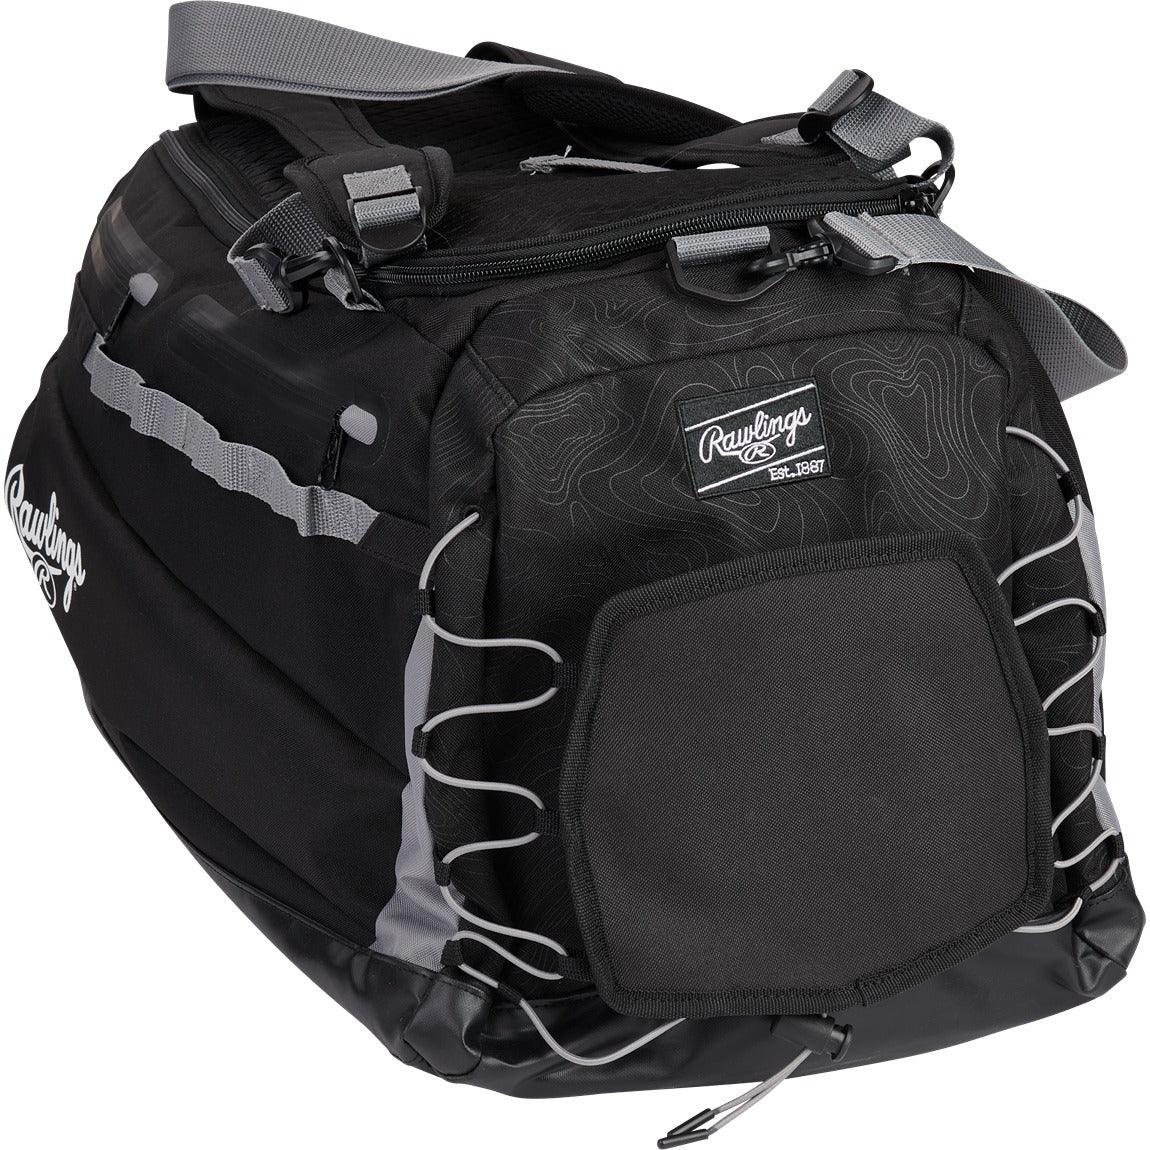 Mach Hybrid Duffle Bag